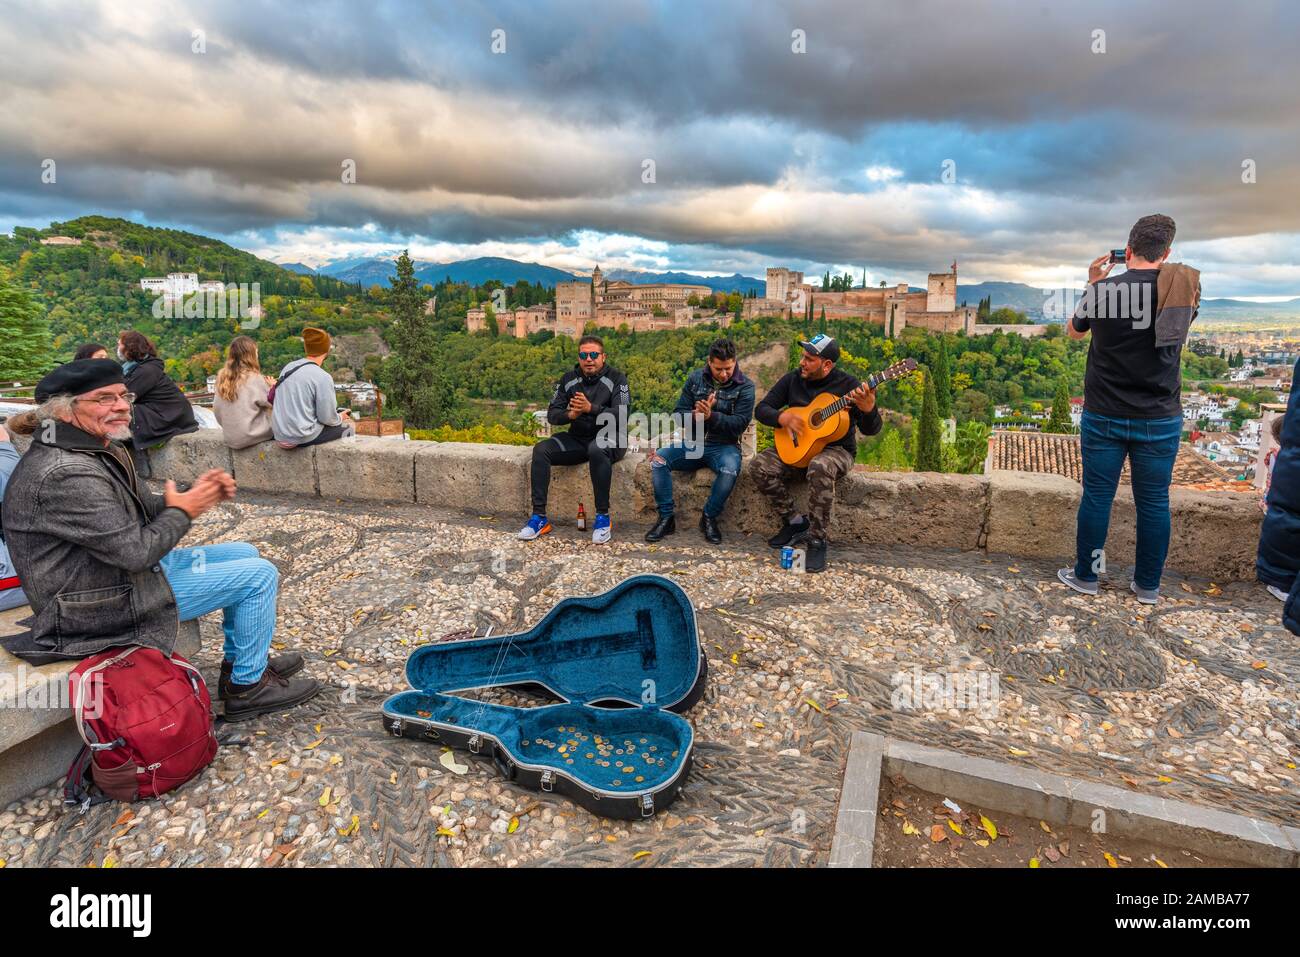 Granada, Spagna - 04 Novembre 2019. Artisti di strada che suonano chitarra e cantano flamenco al mirador san nicolas nel quartiere Albaicin. Foto Stock